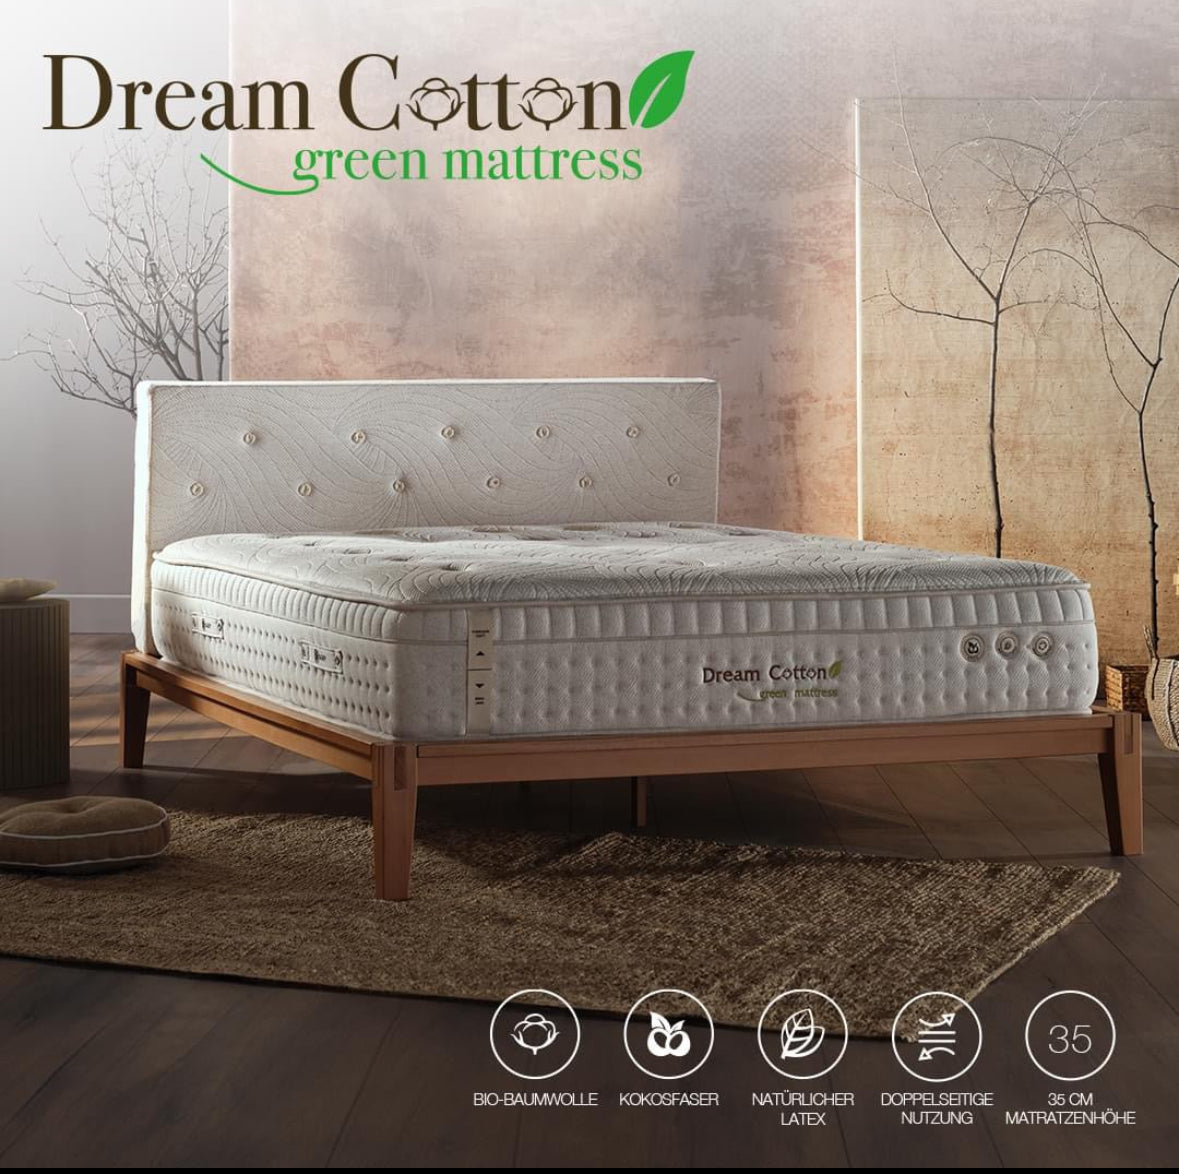 Dream Cotton Grün Matratze